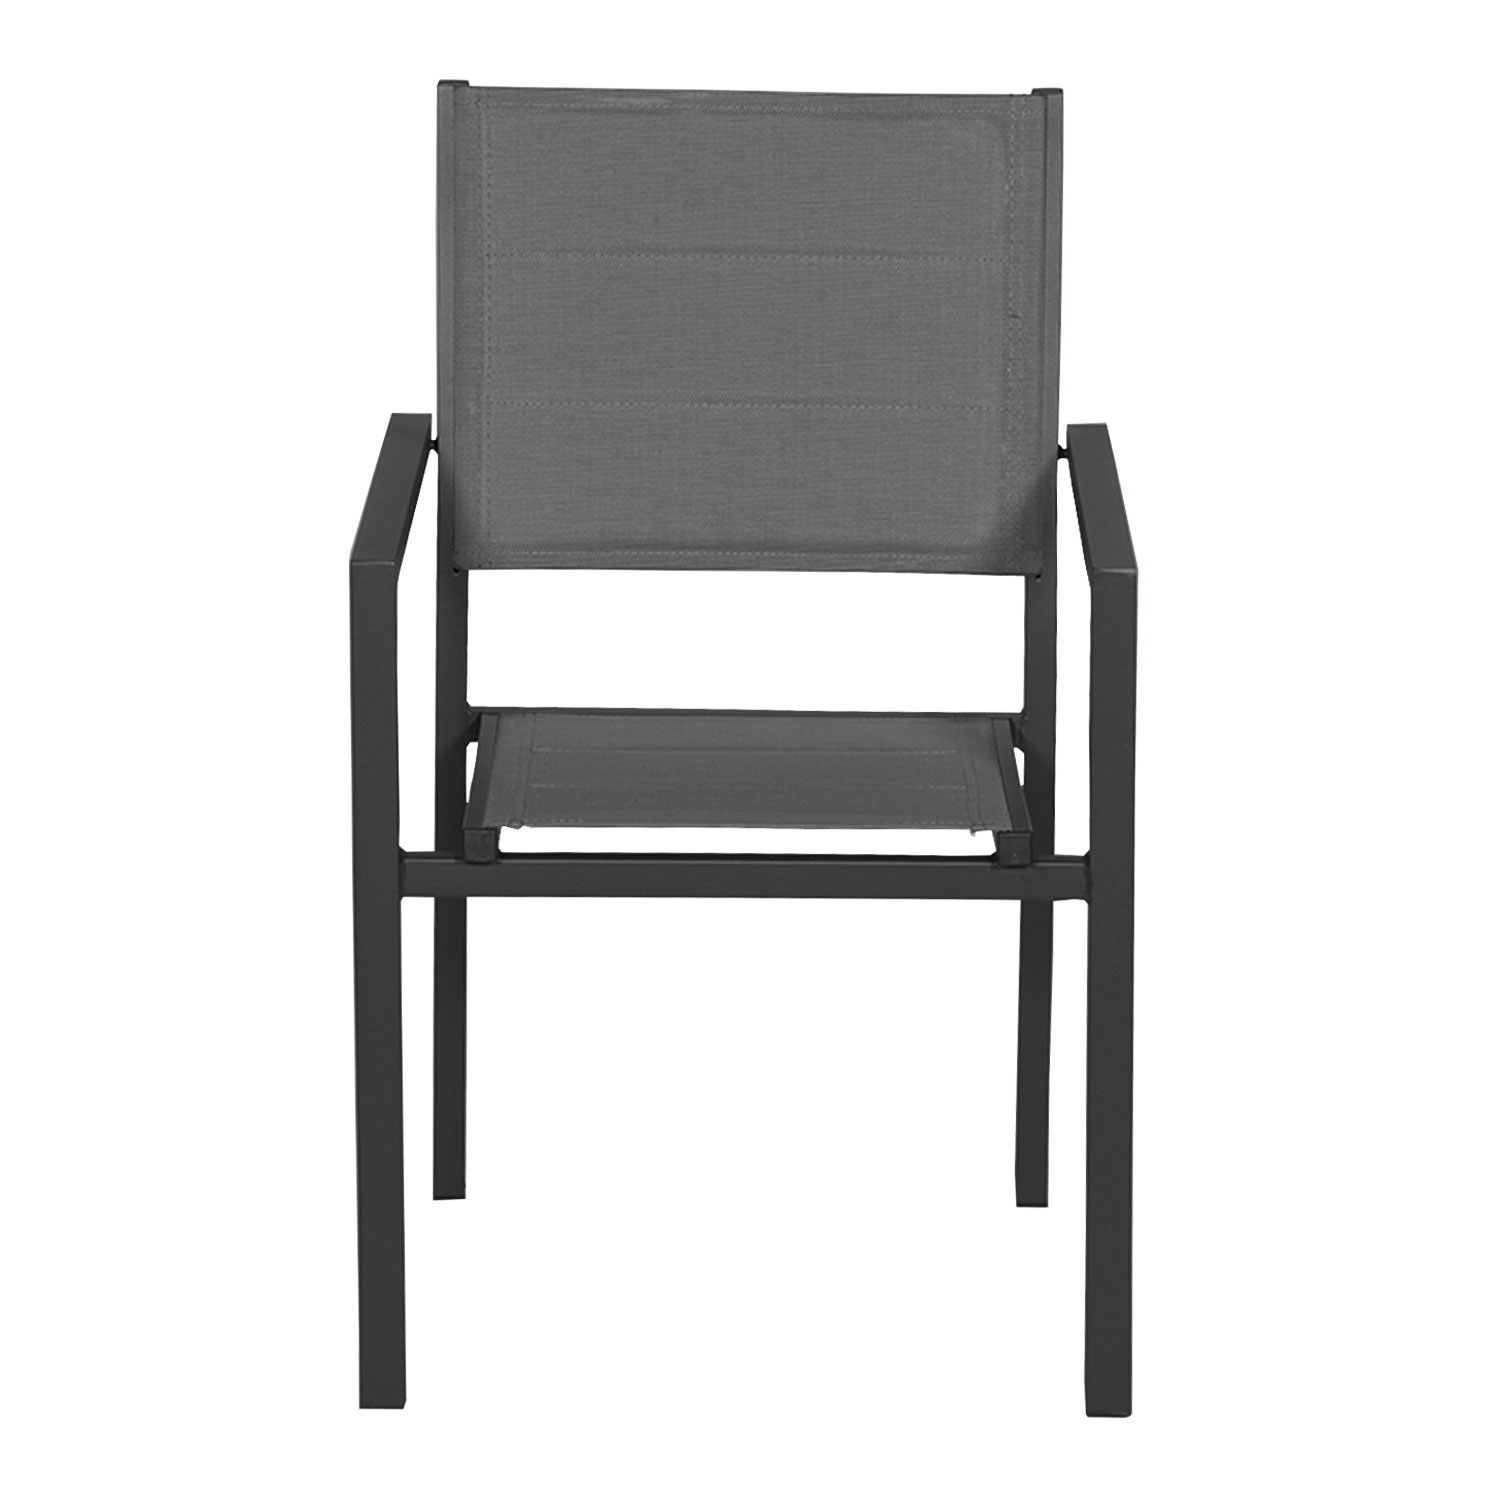 Set aus 10 gepolsterten Stühlen aus anthrazitfarbenem Aluminium - graues Textilene